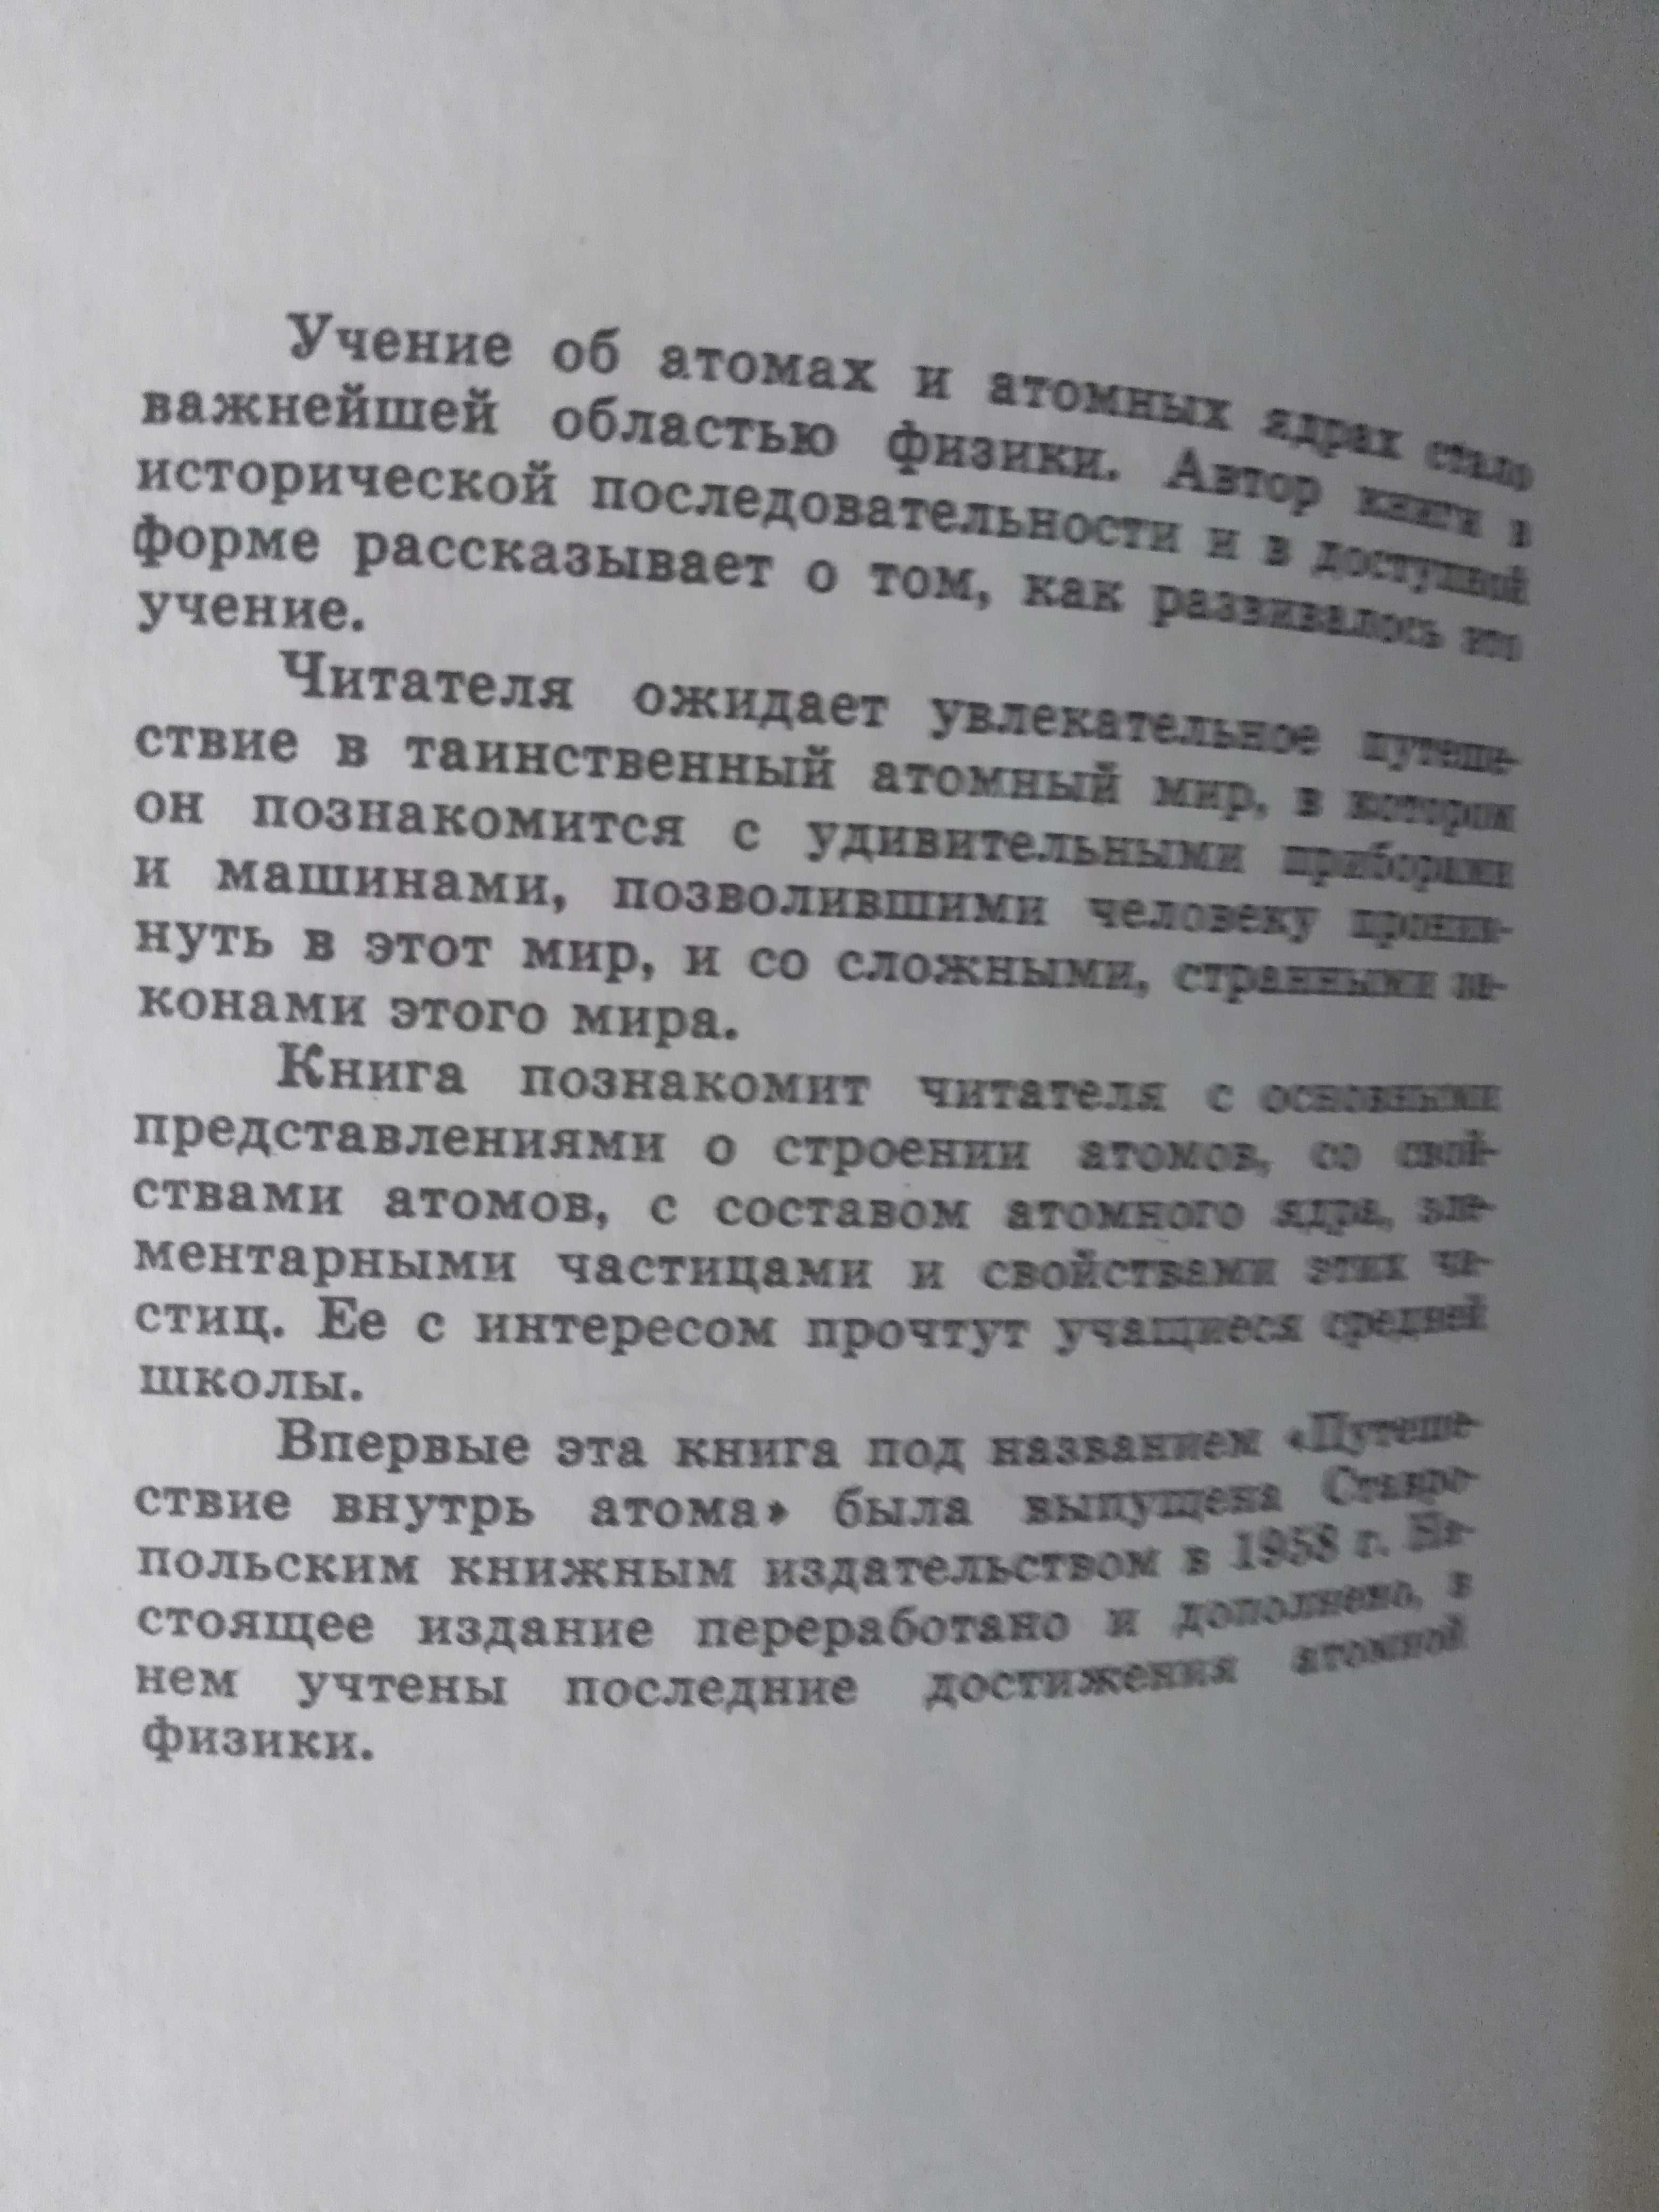 Е.И.Несис Путешествие вглубь атома 1965г.в.